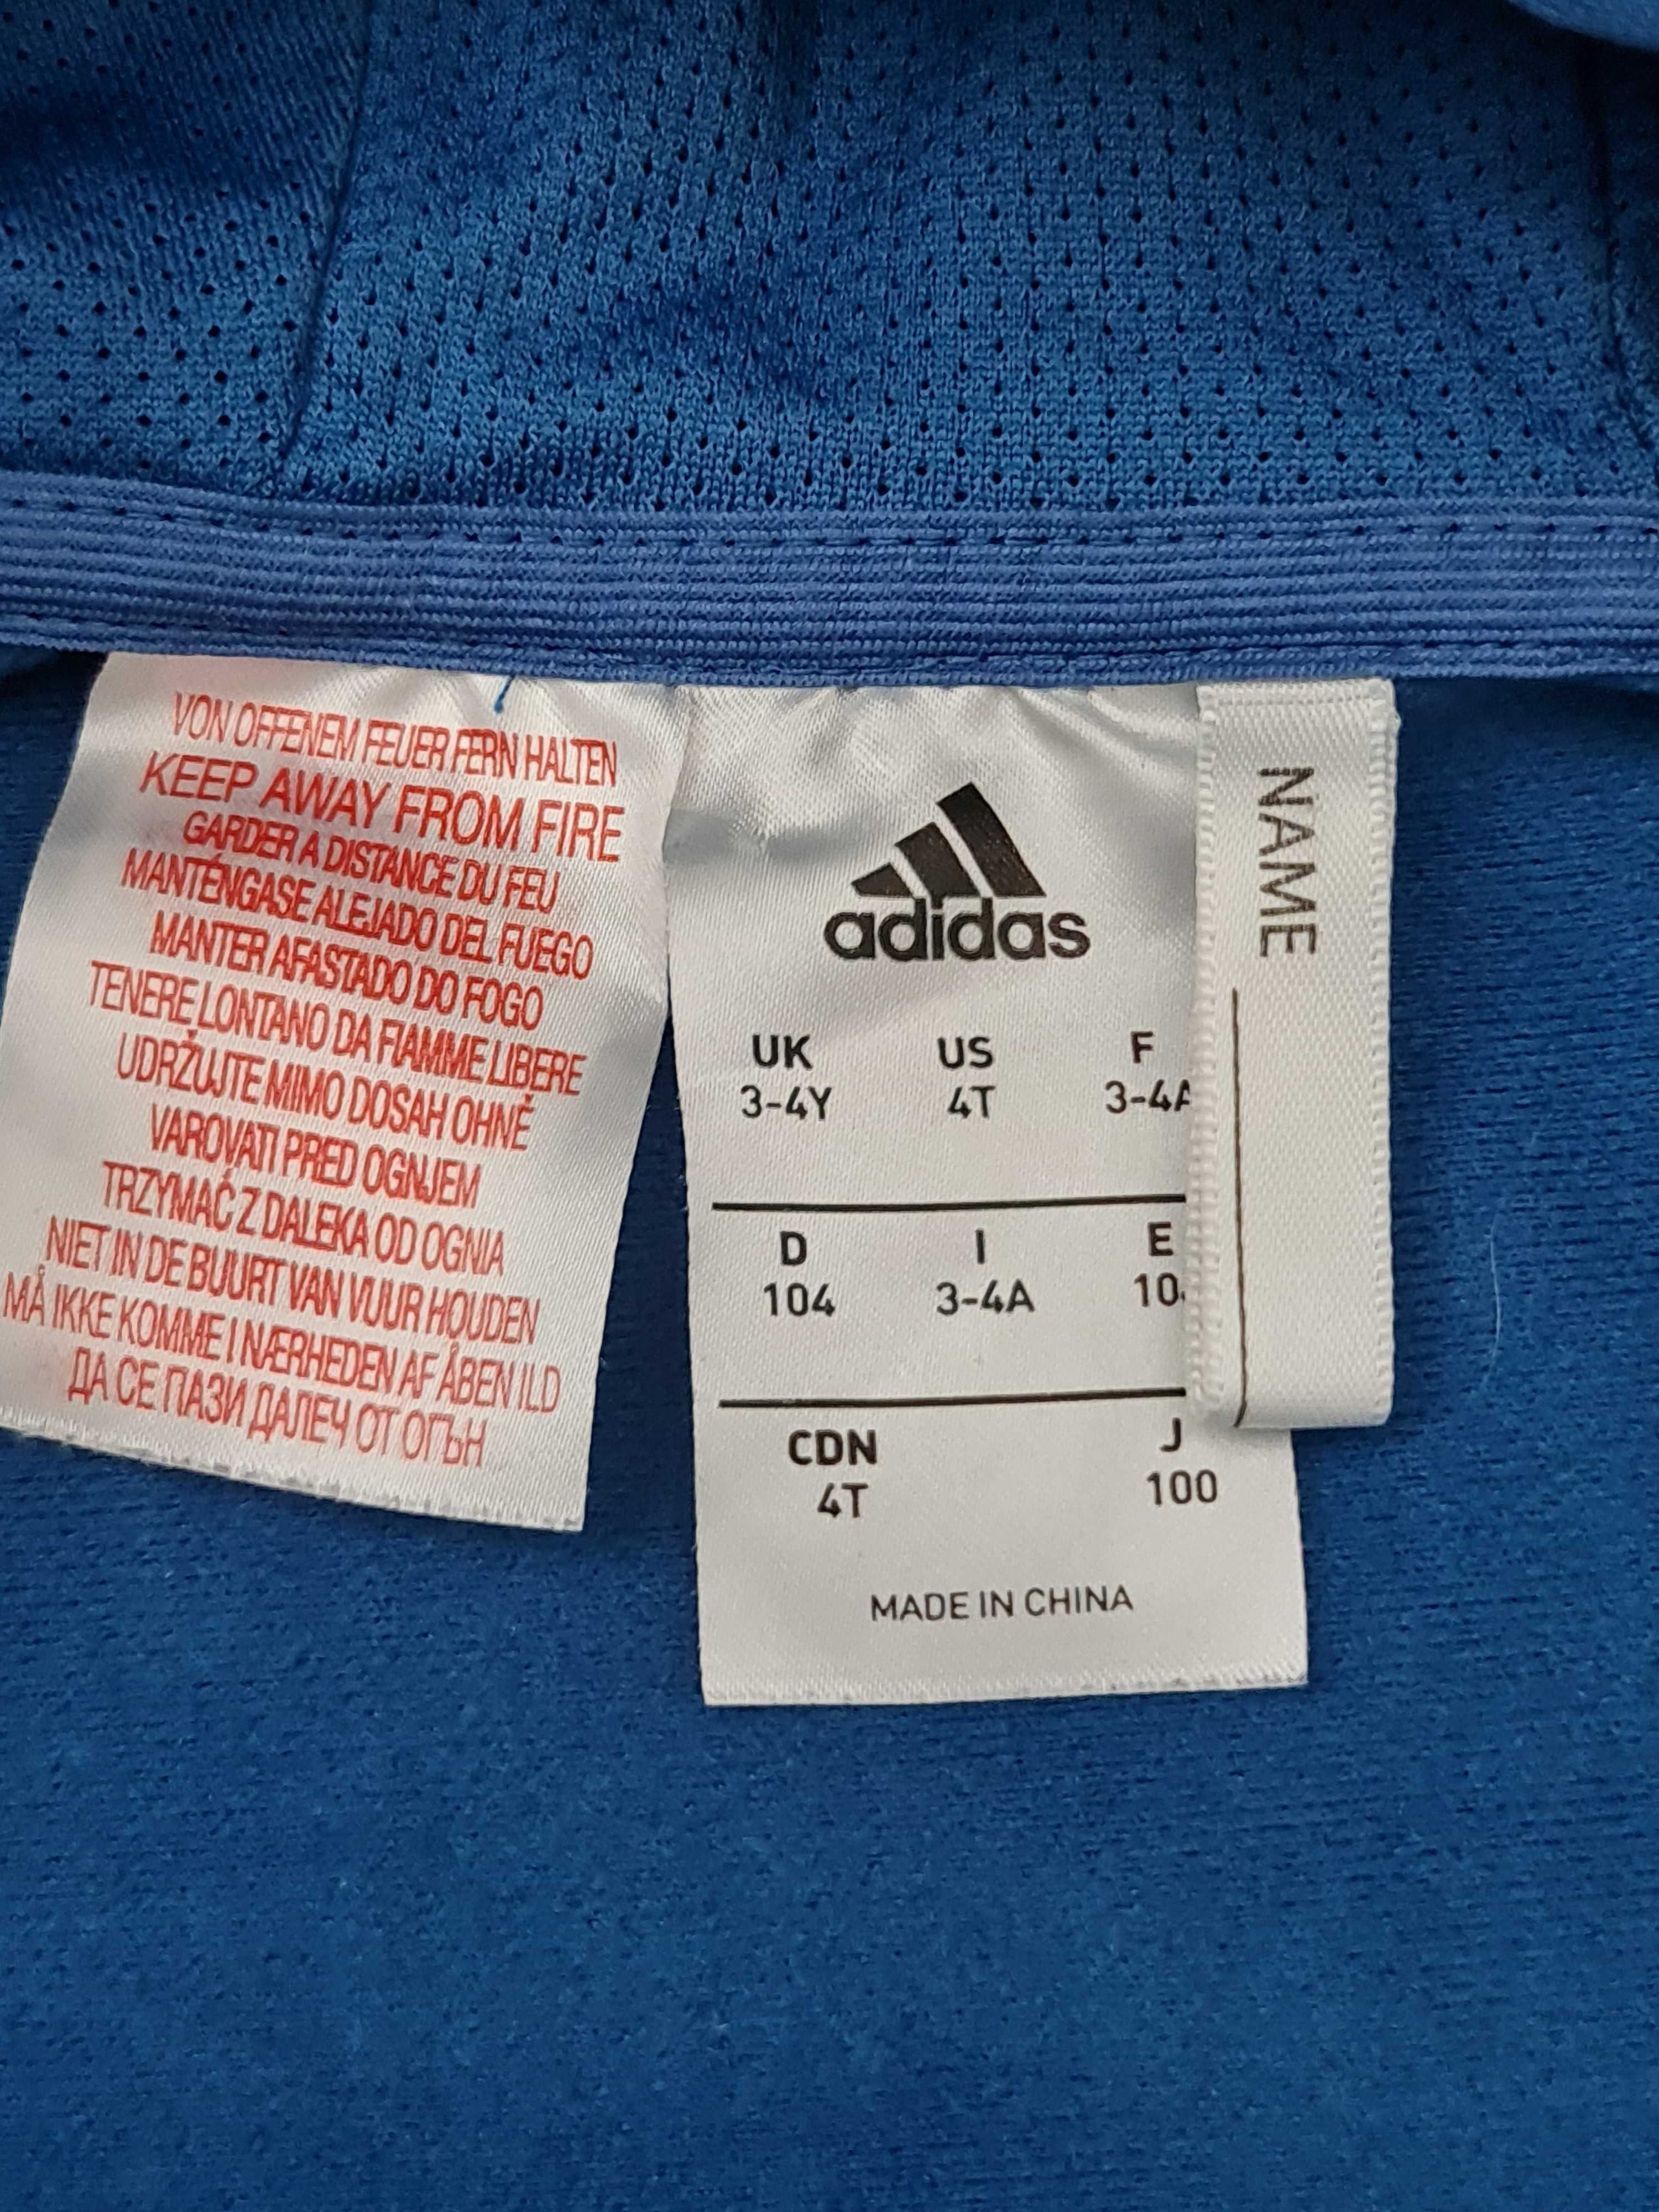 Bluza Adidas Zip zasuwana Rozmiar 98 - 104 na Wiek 3 a 4 Lat